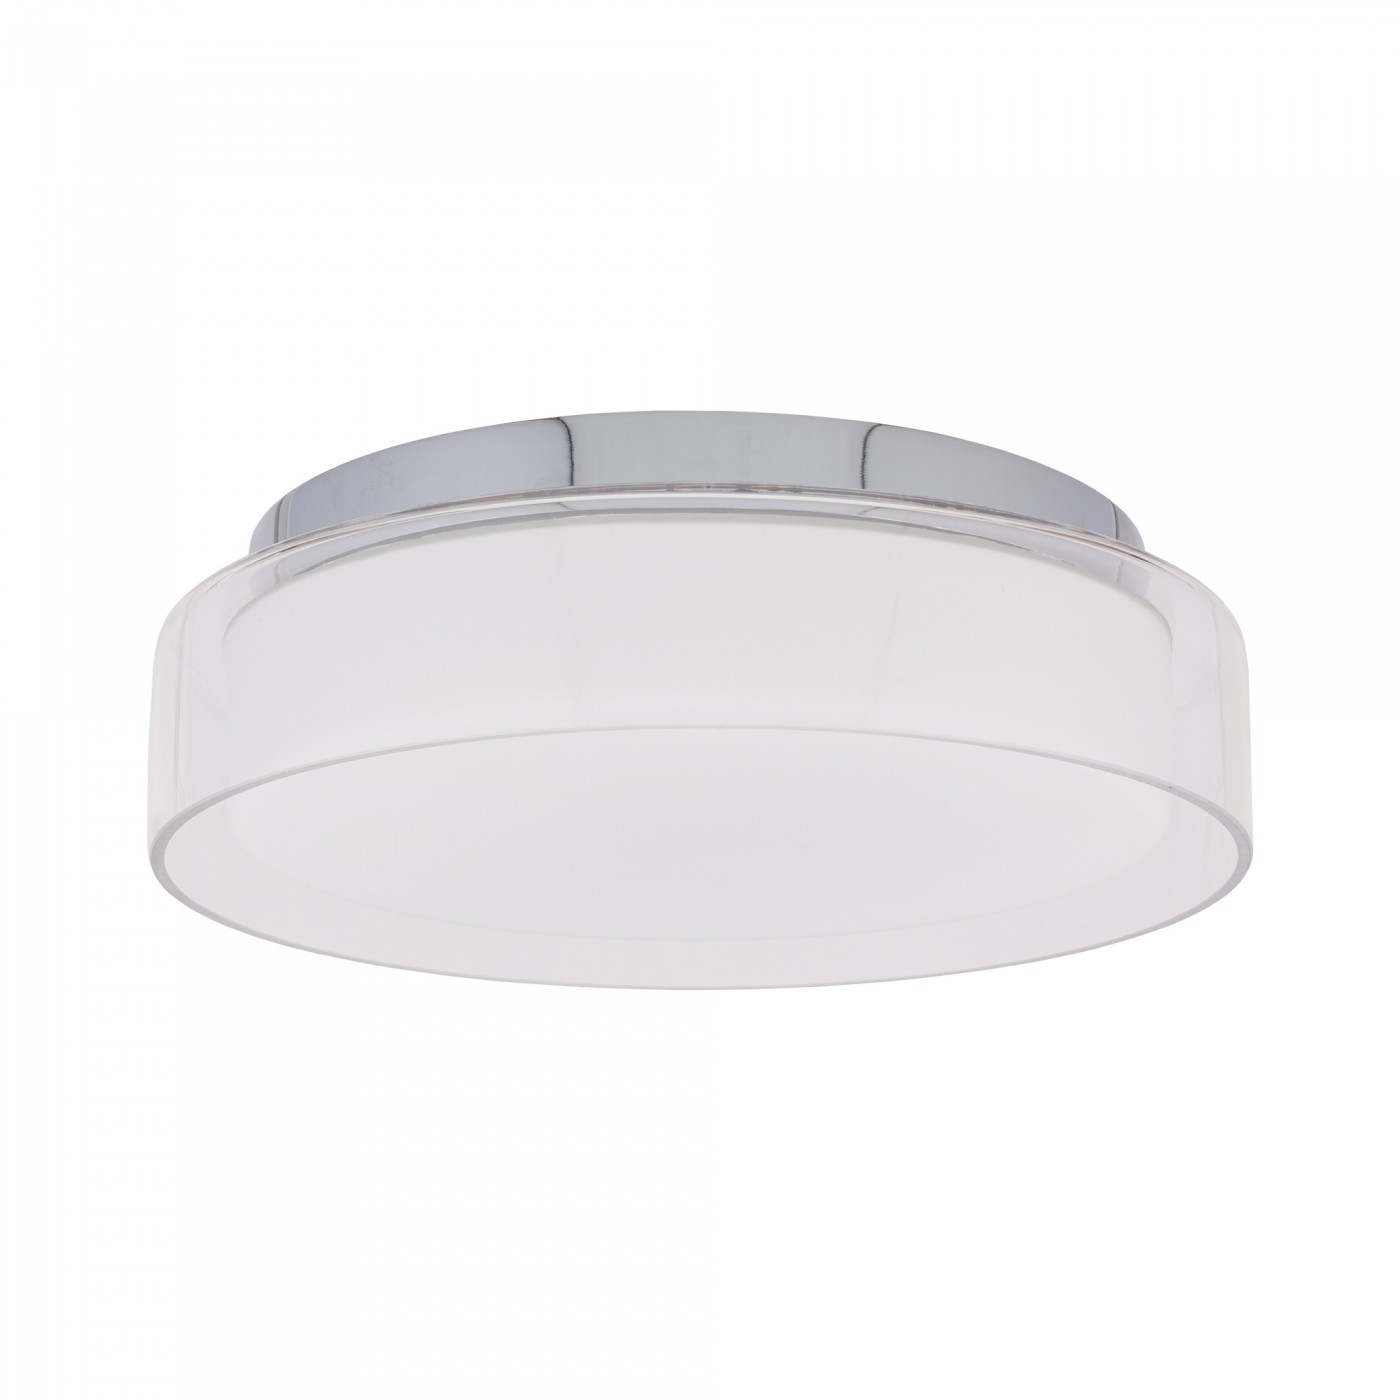 PAN LED S 8173 Nowodvorski Lighting